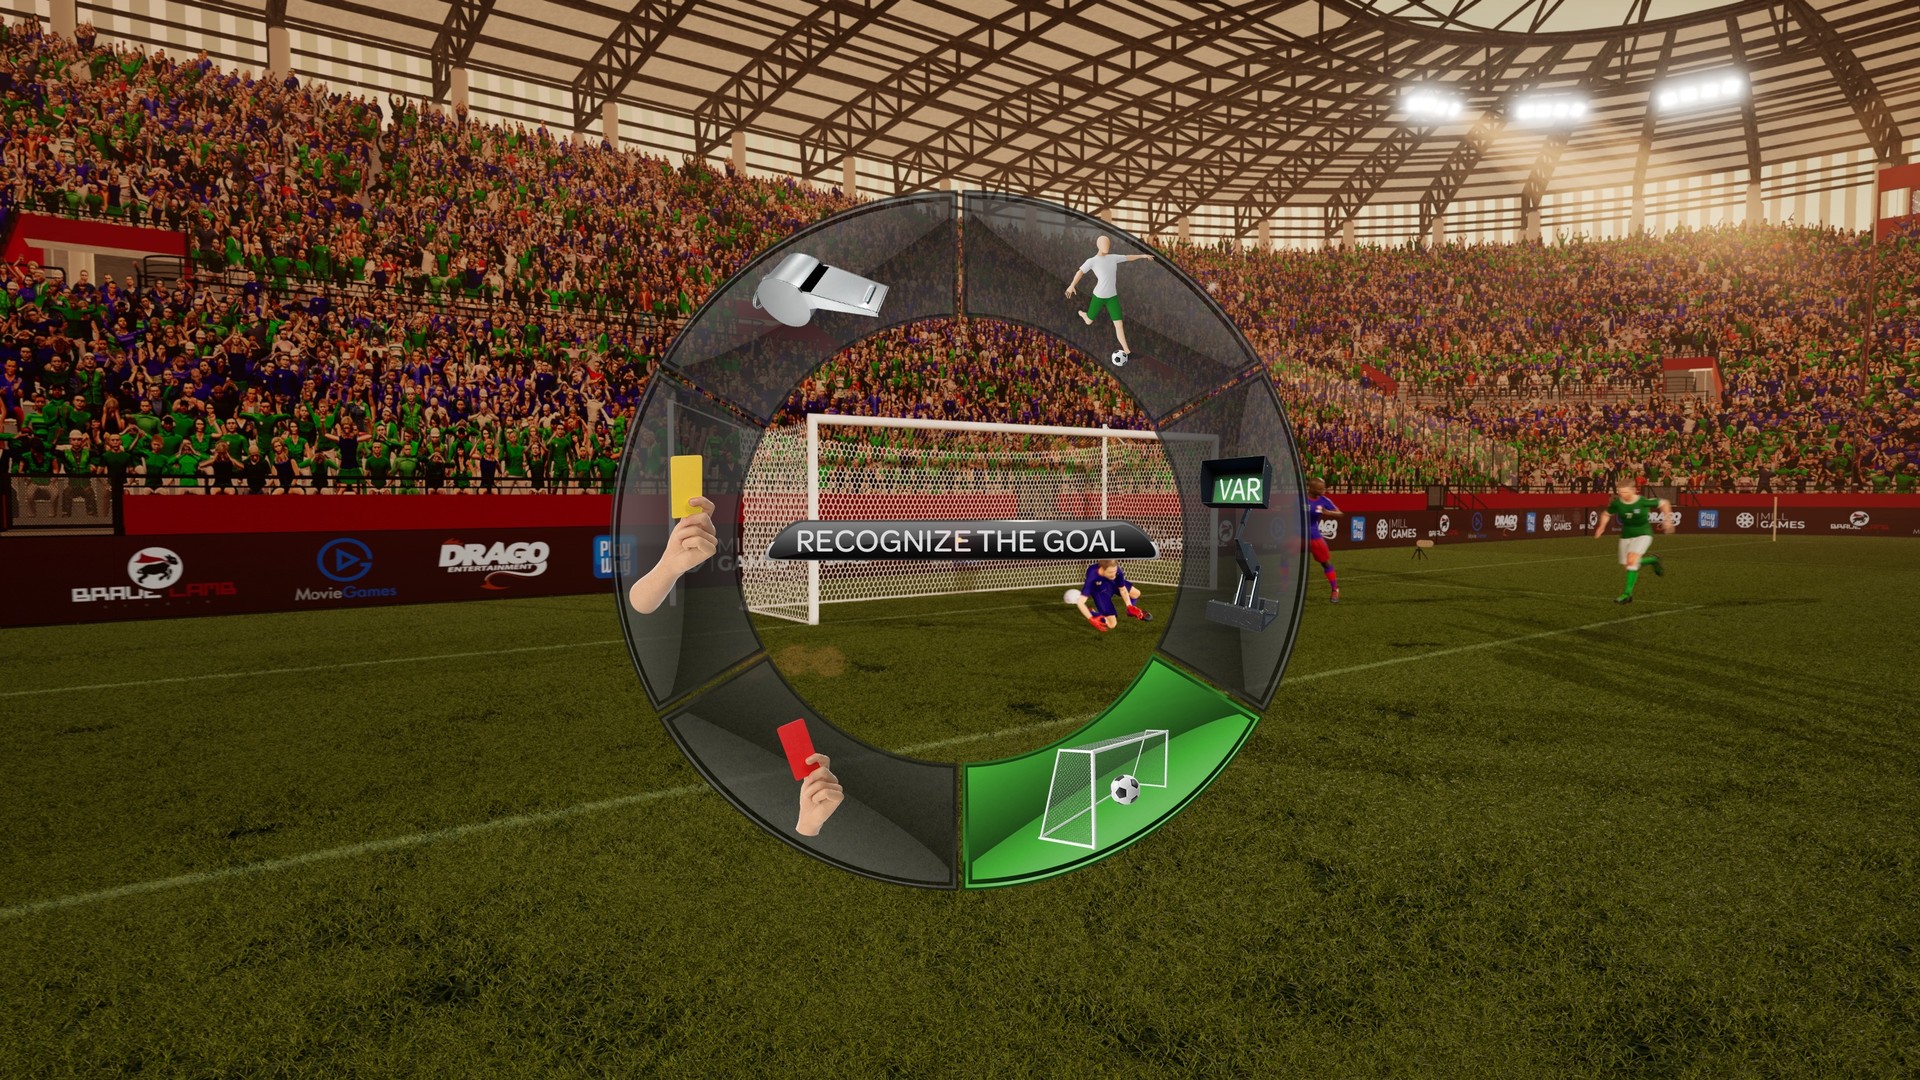 Referee Simulator no Steam